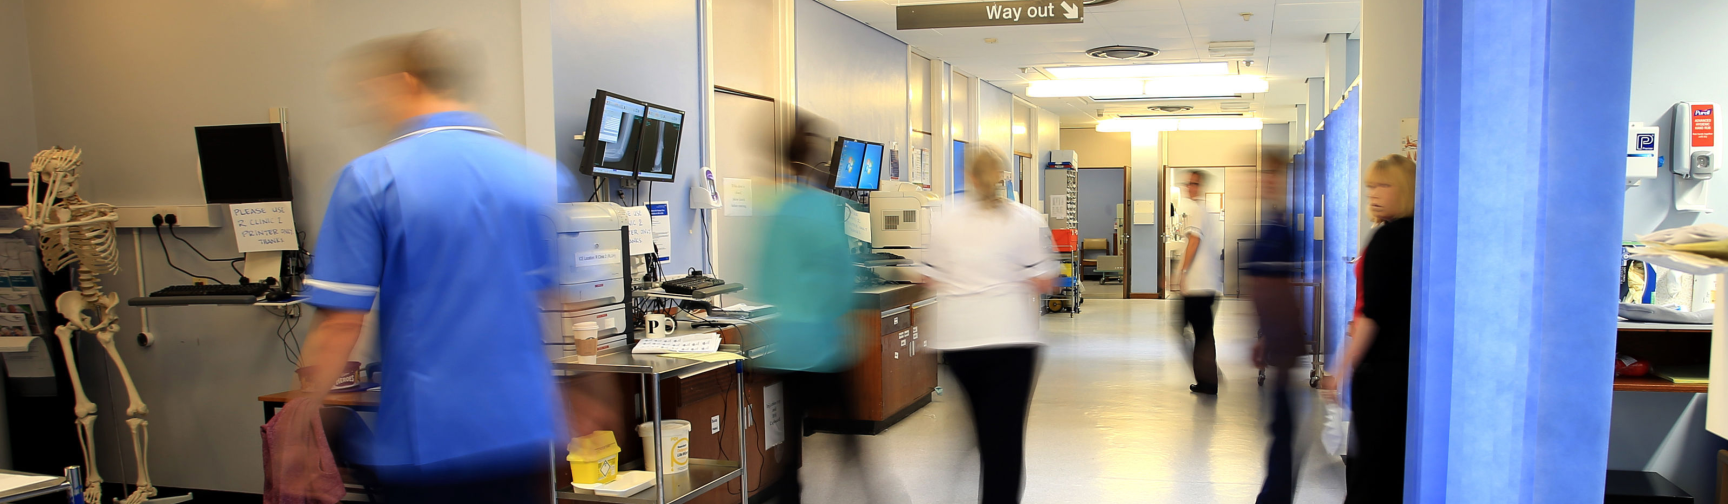 Image of hospital ward